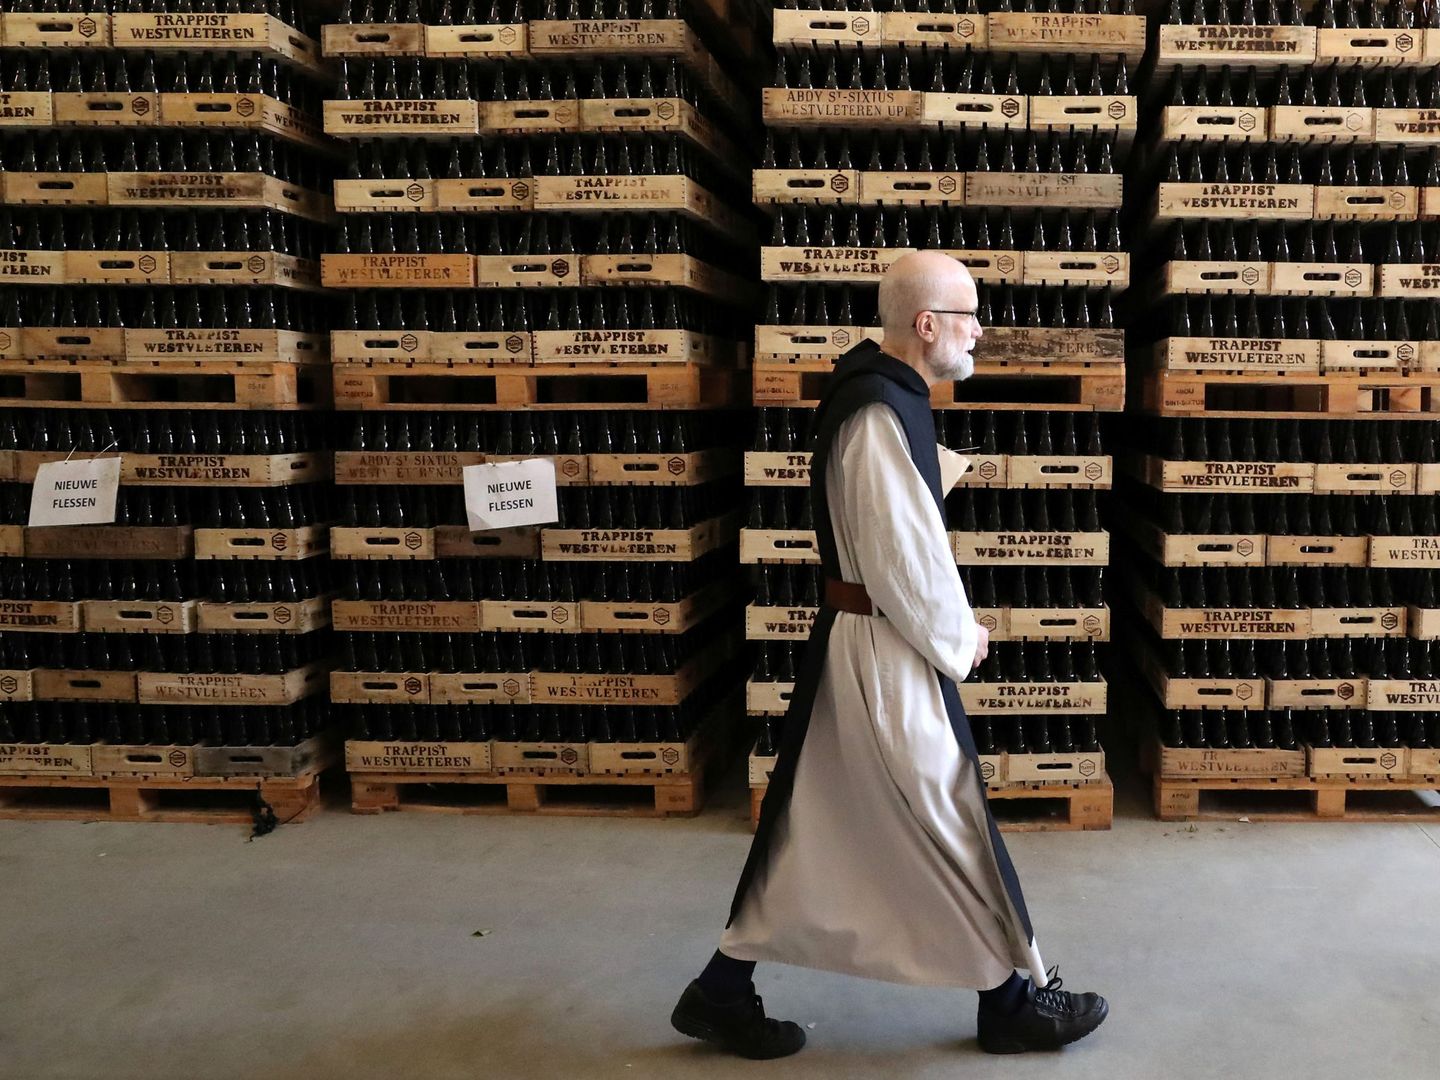 Un monje camina por el almacén de cervezas transitas. (Reuters)